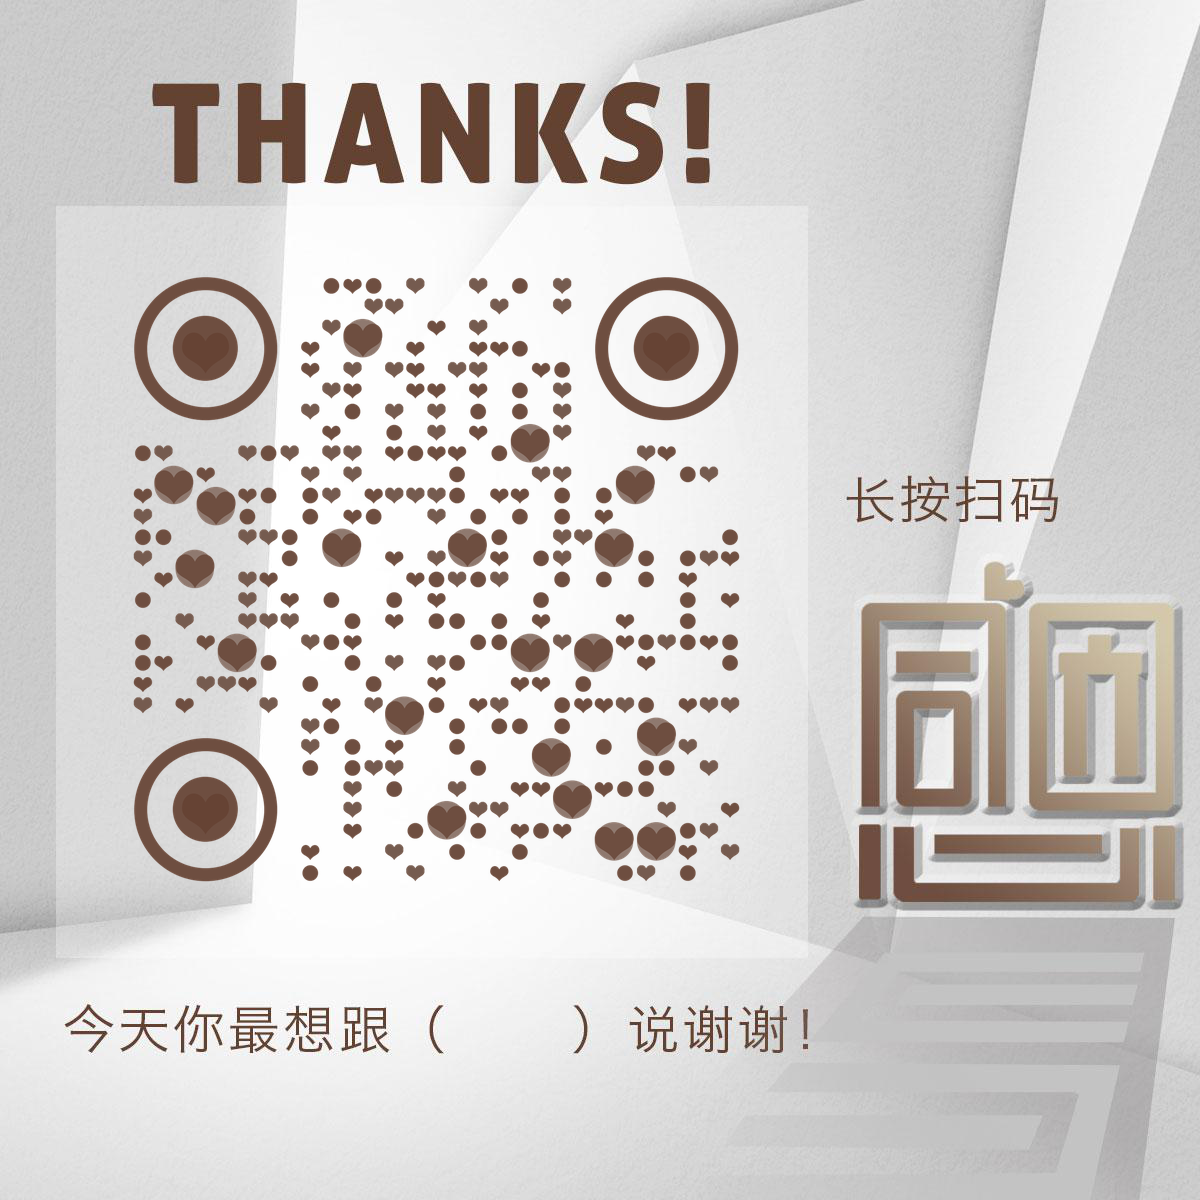 感恩节谢谢你文字设计二维码生成器-平面静态-正方形码